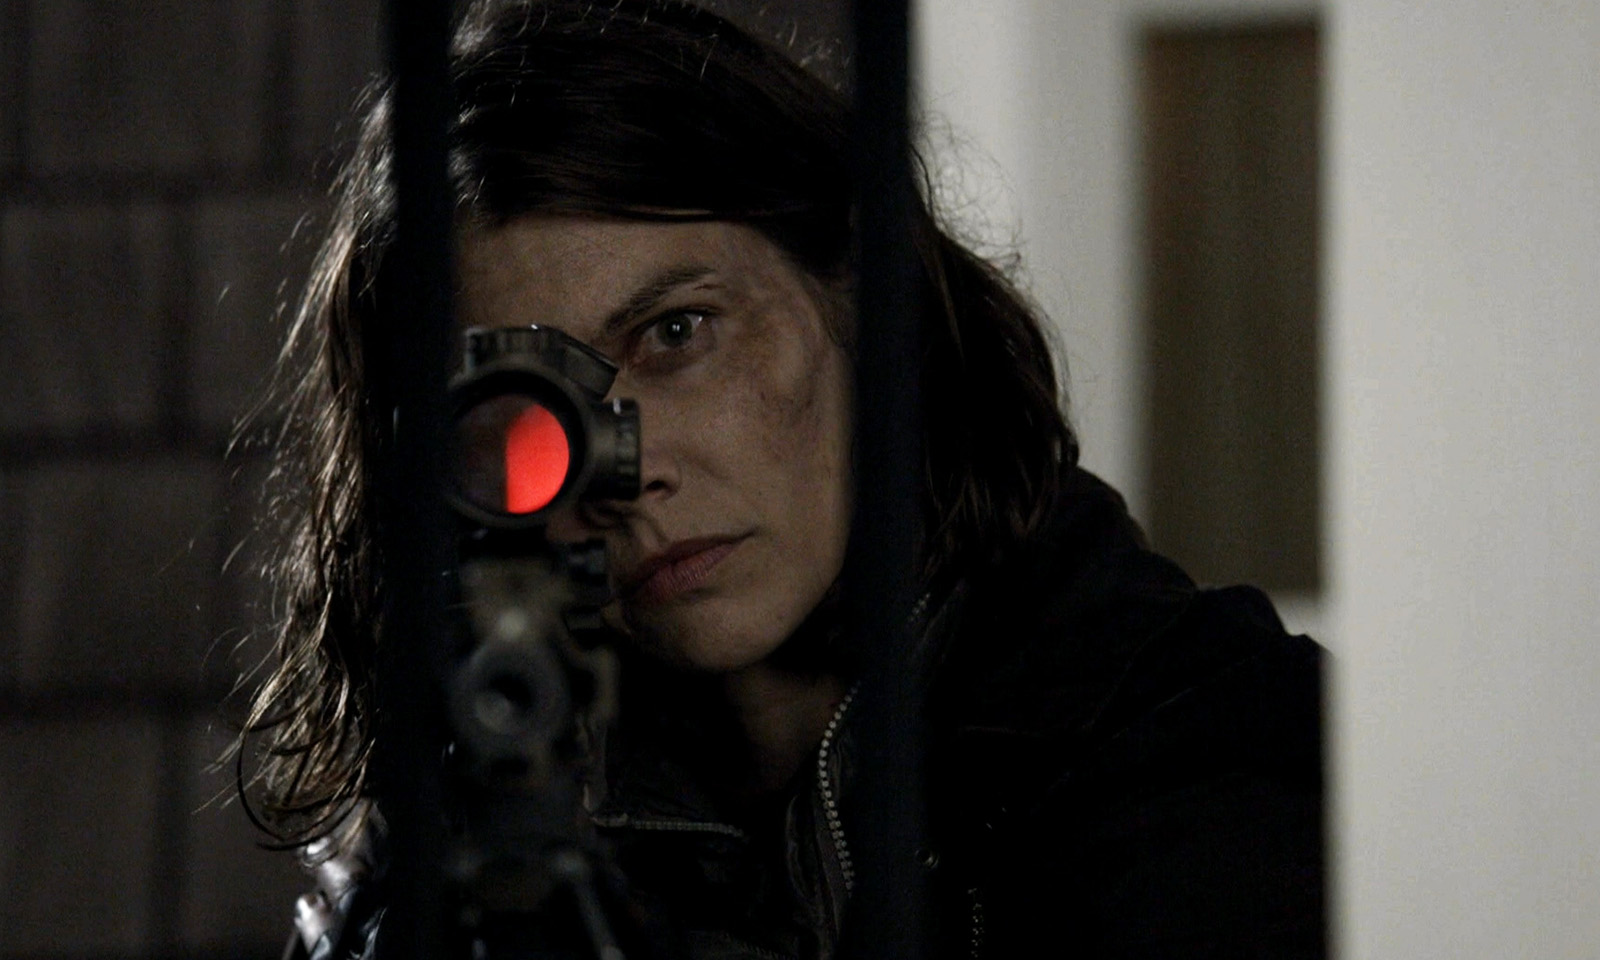 Maggie mirando com sua arma em cena do episódio 24 da 11ª temporada de The Walking Dead.